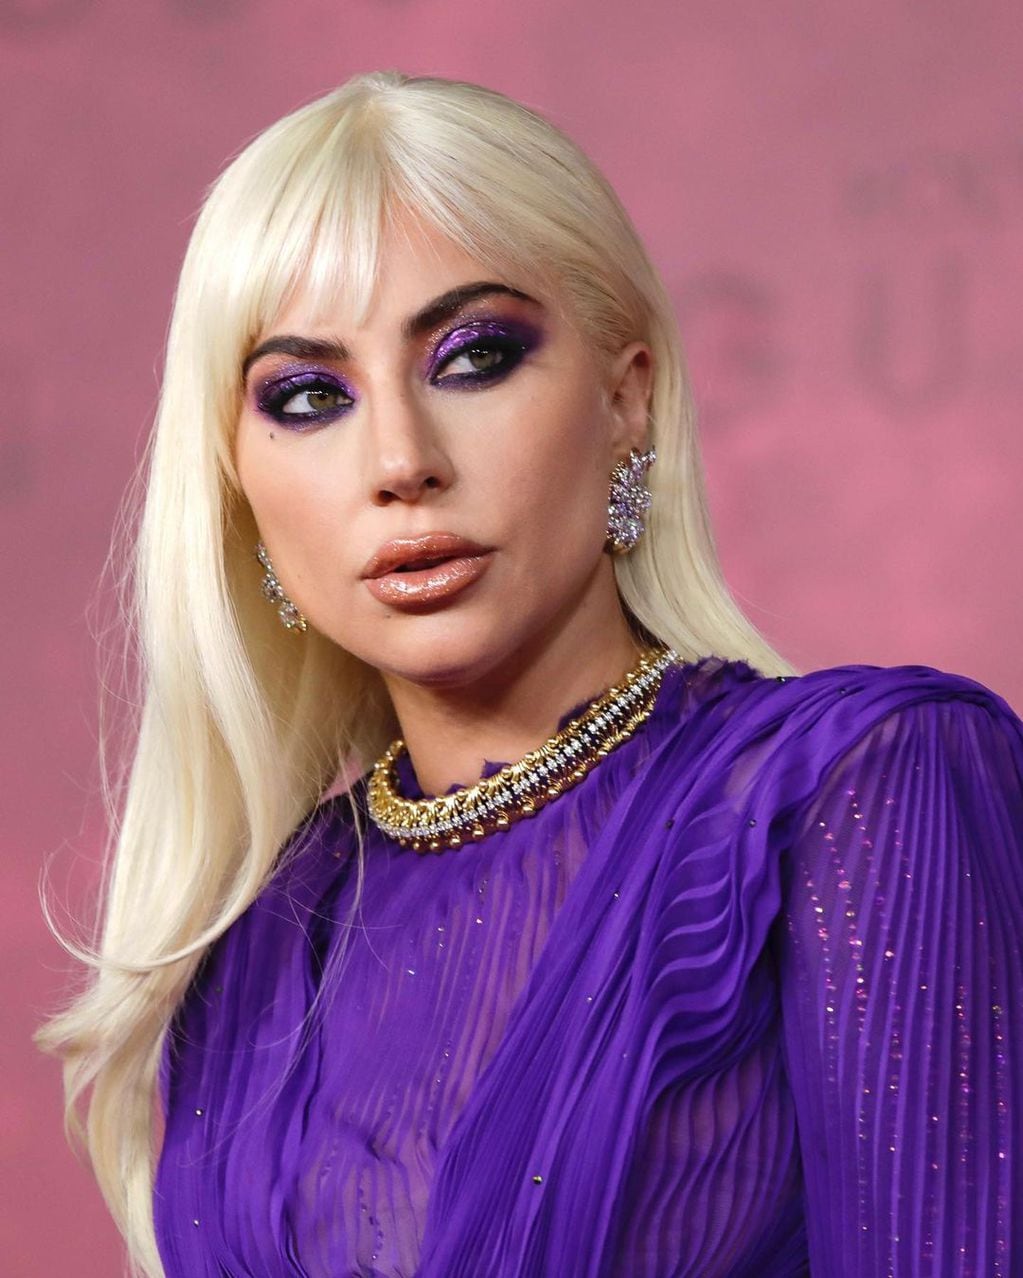 El color protagonista del look de Lady Gaga es el violeta, el cual utilizó tanto en su atuendo como en su maquillaje. (Foto: Instagram)